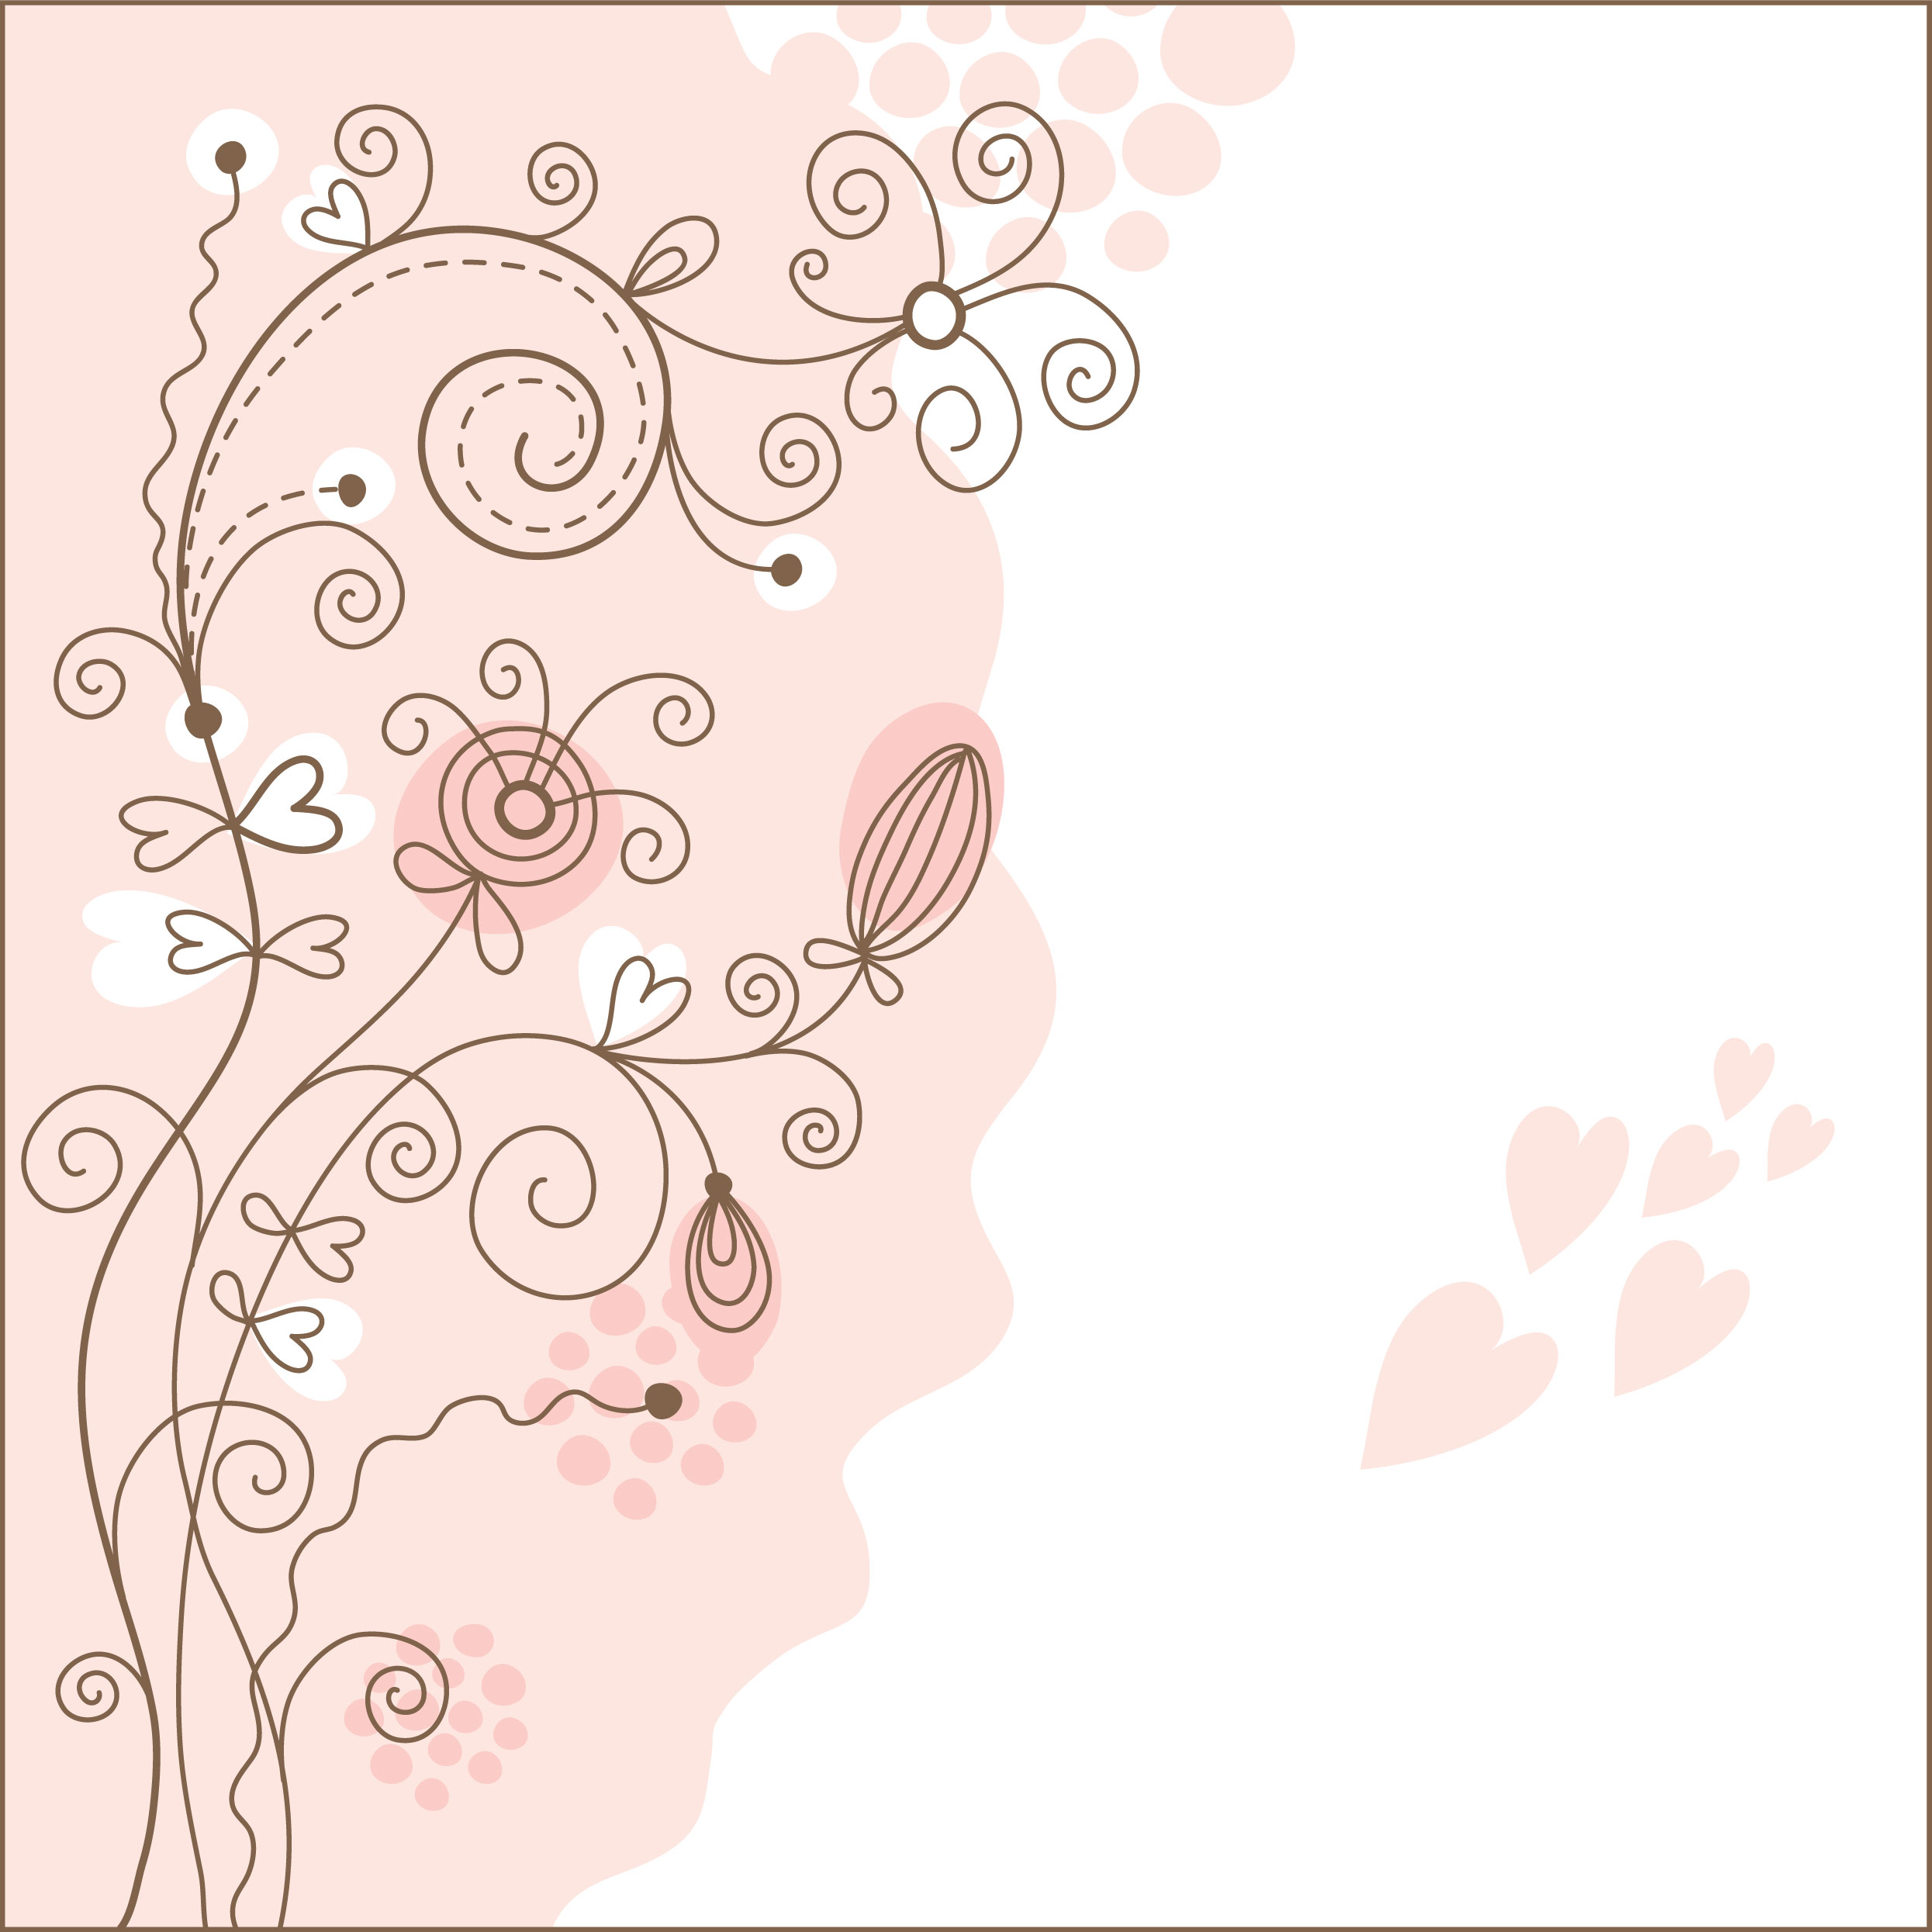 ピンクの花のイラスト フリー素材 壁紙 背景no 688 手書き風